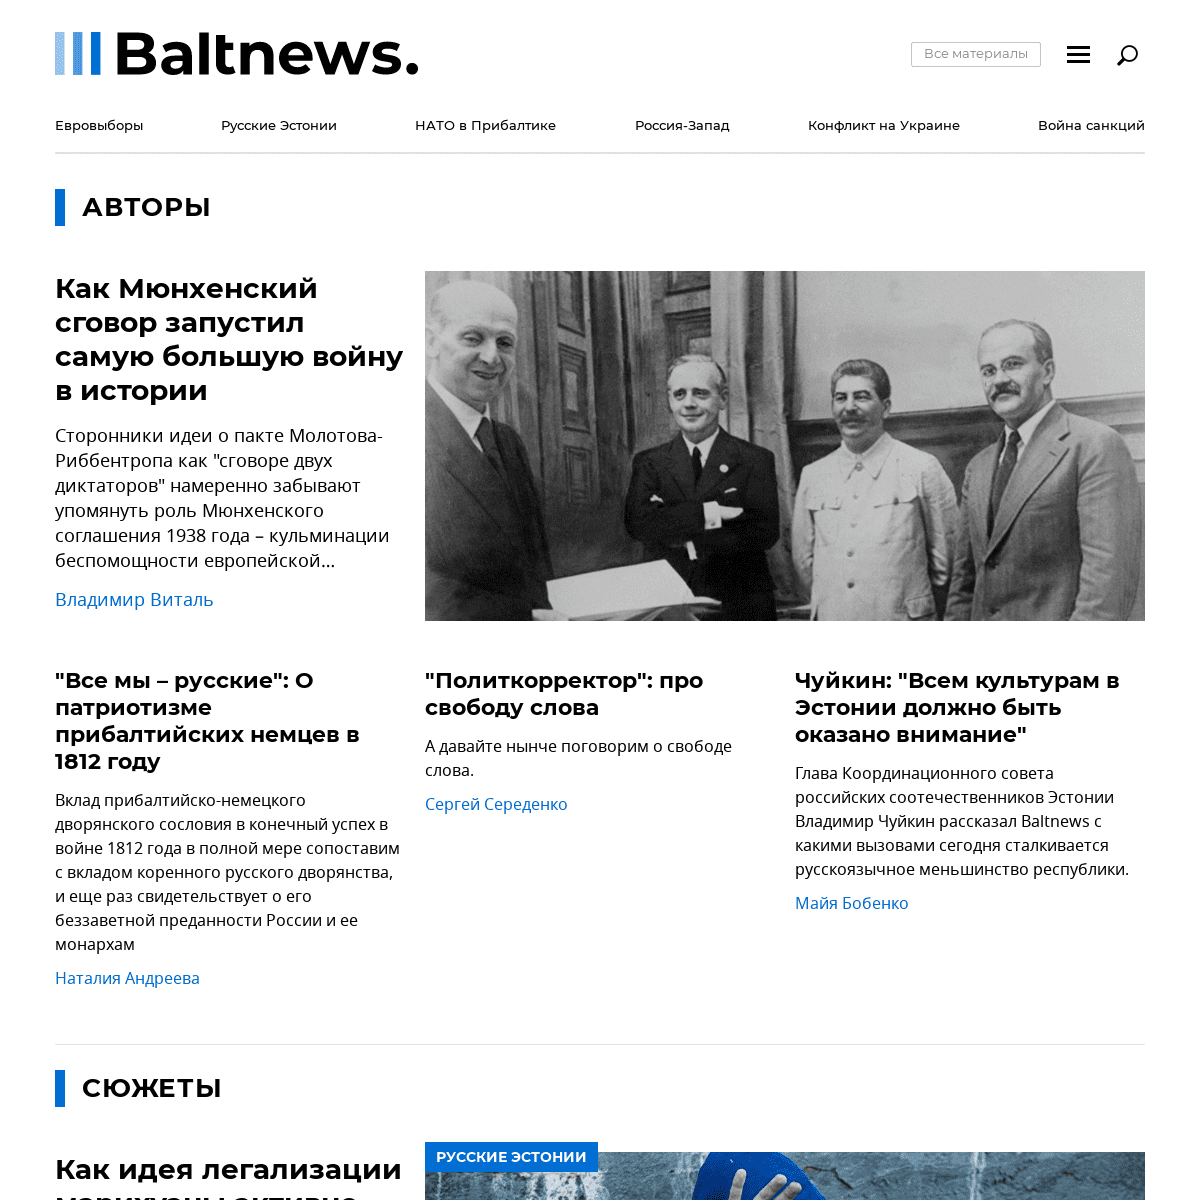 Baltnews - новостной портал на русском языке в Эстонии, Прибалтика, сводки событий, мнения, комментарии.